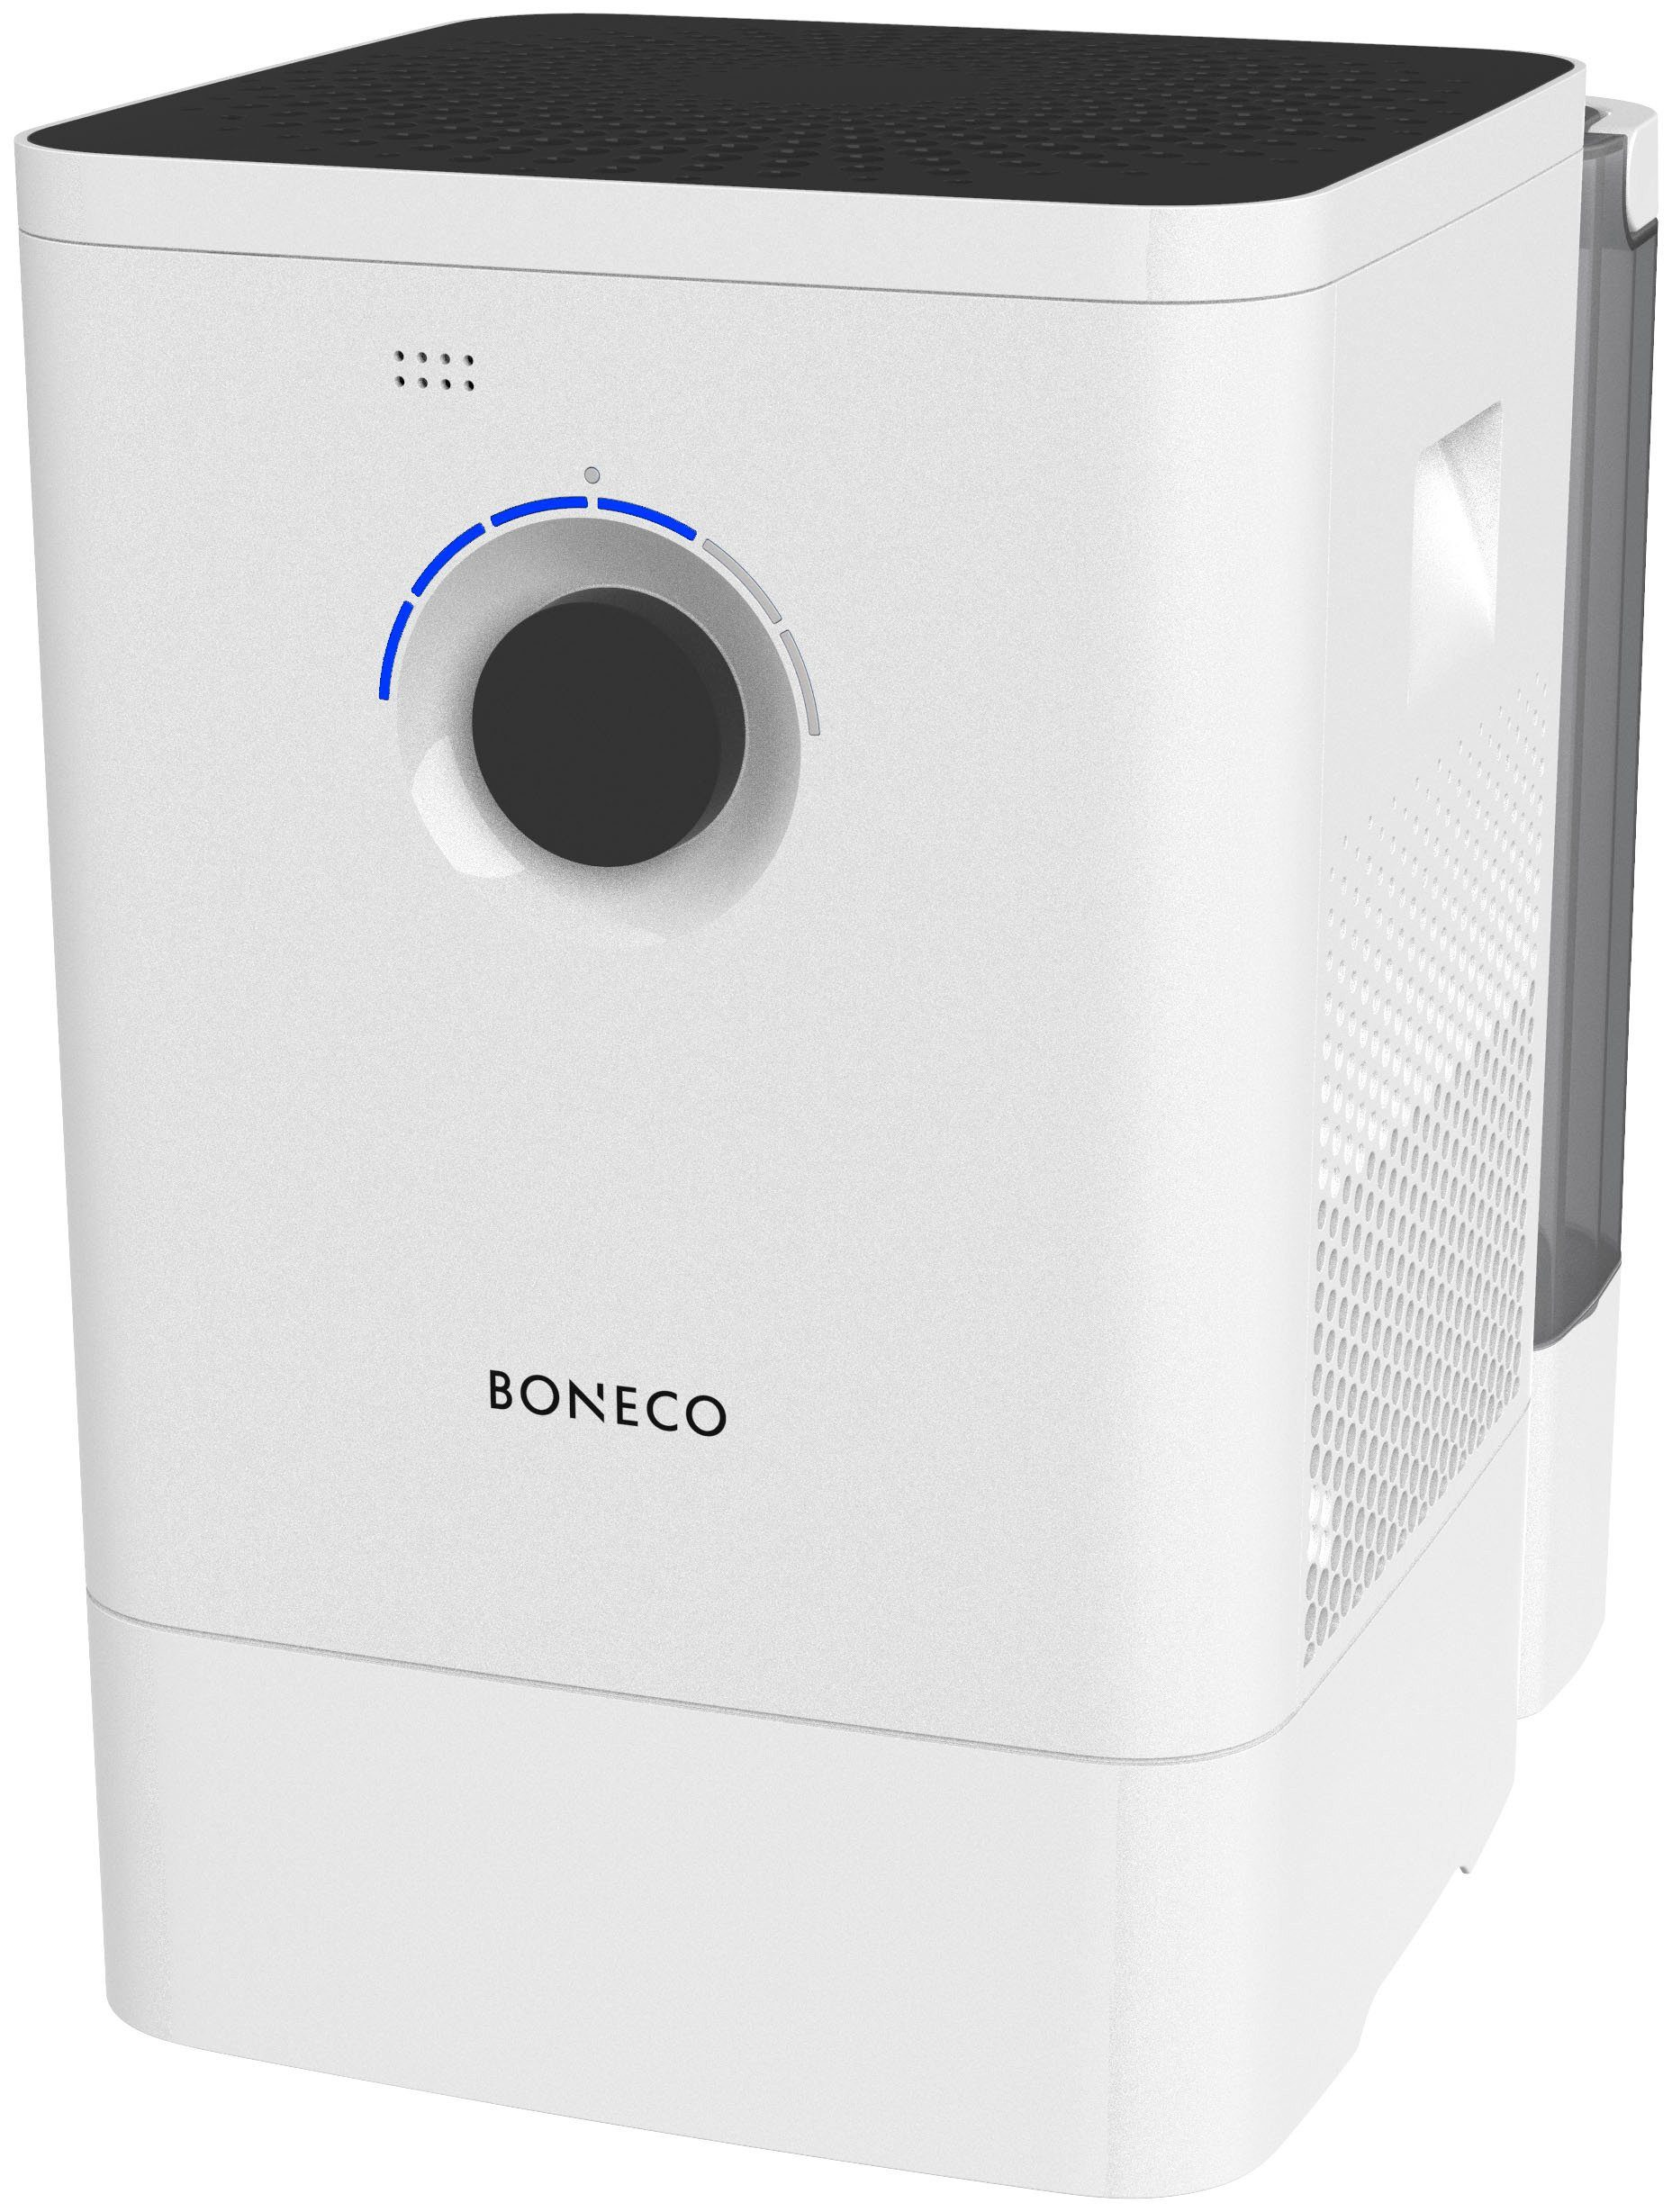 BONECO W400 Luftbefeuchter Weiß m²) (000 60 Raumgröße: Watt